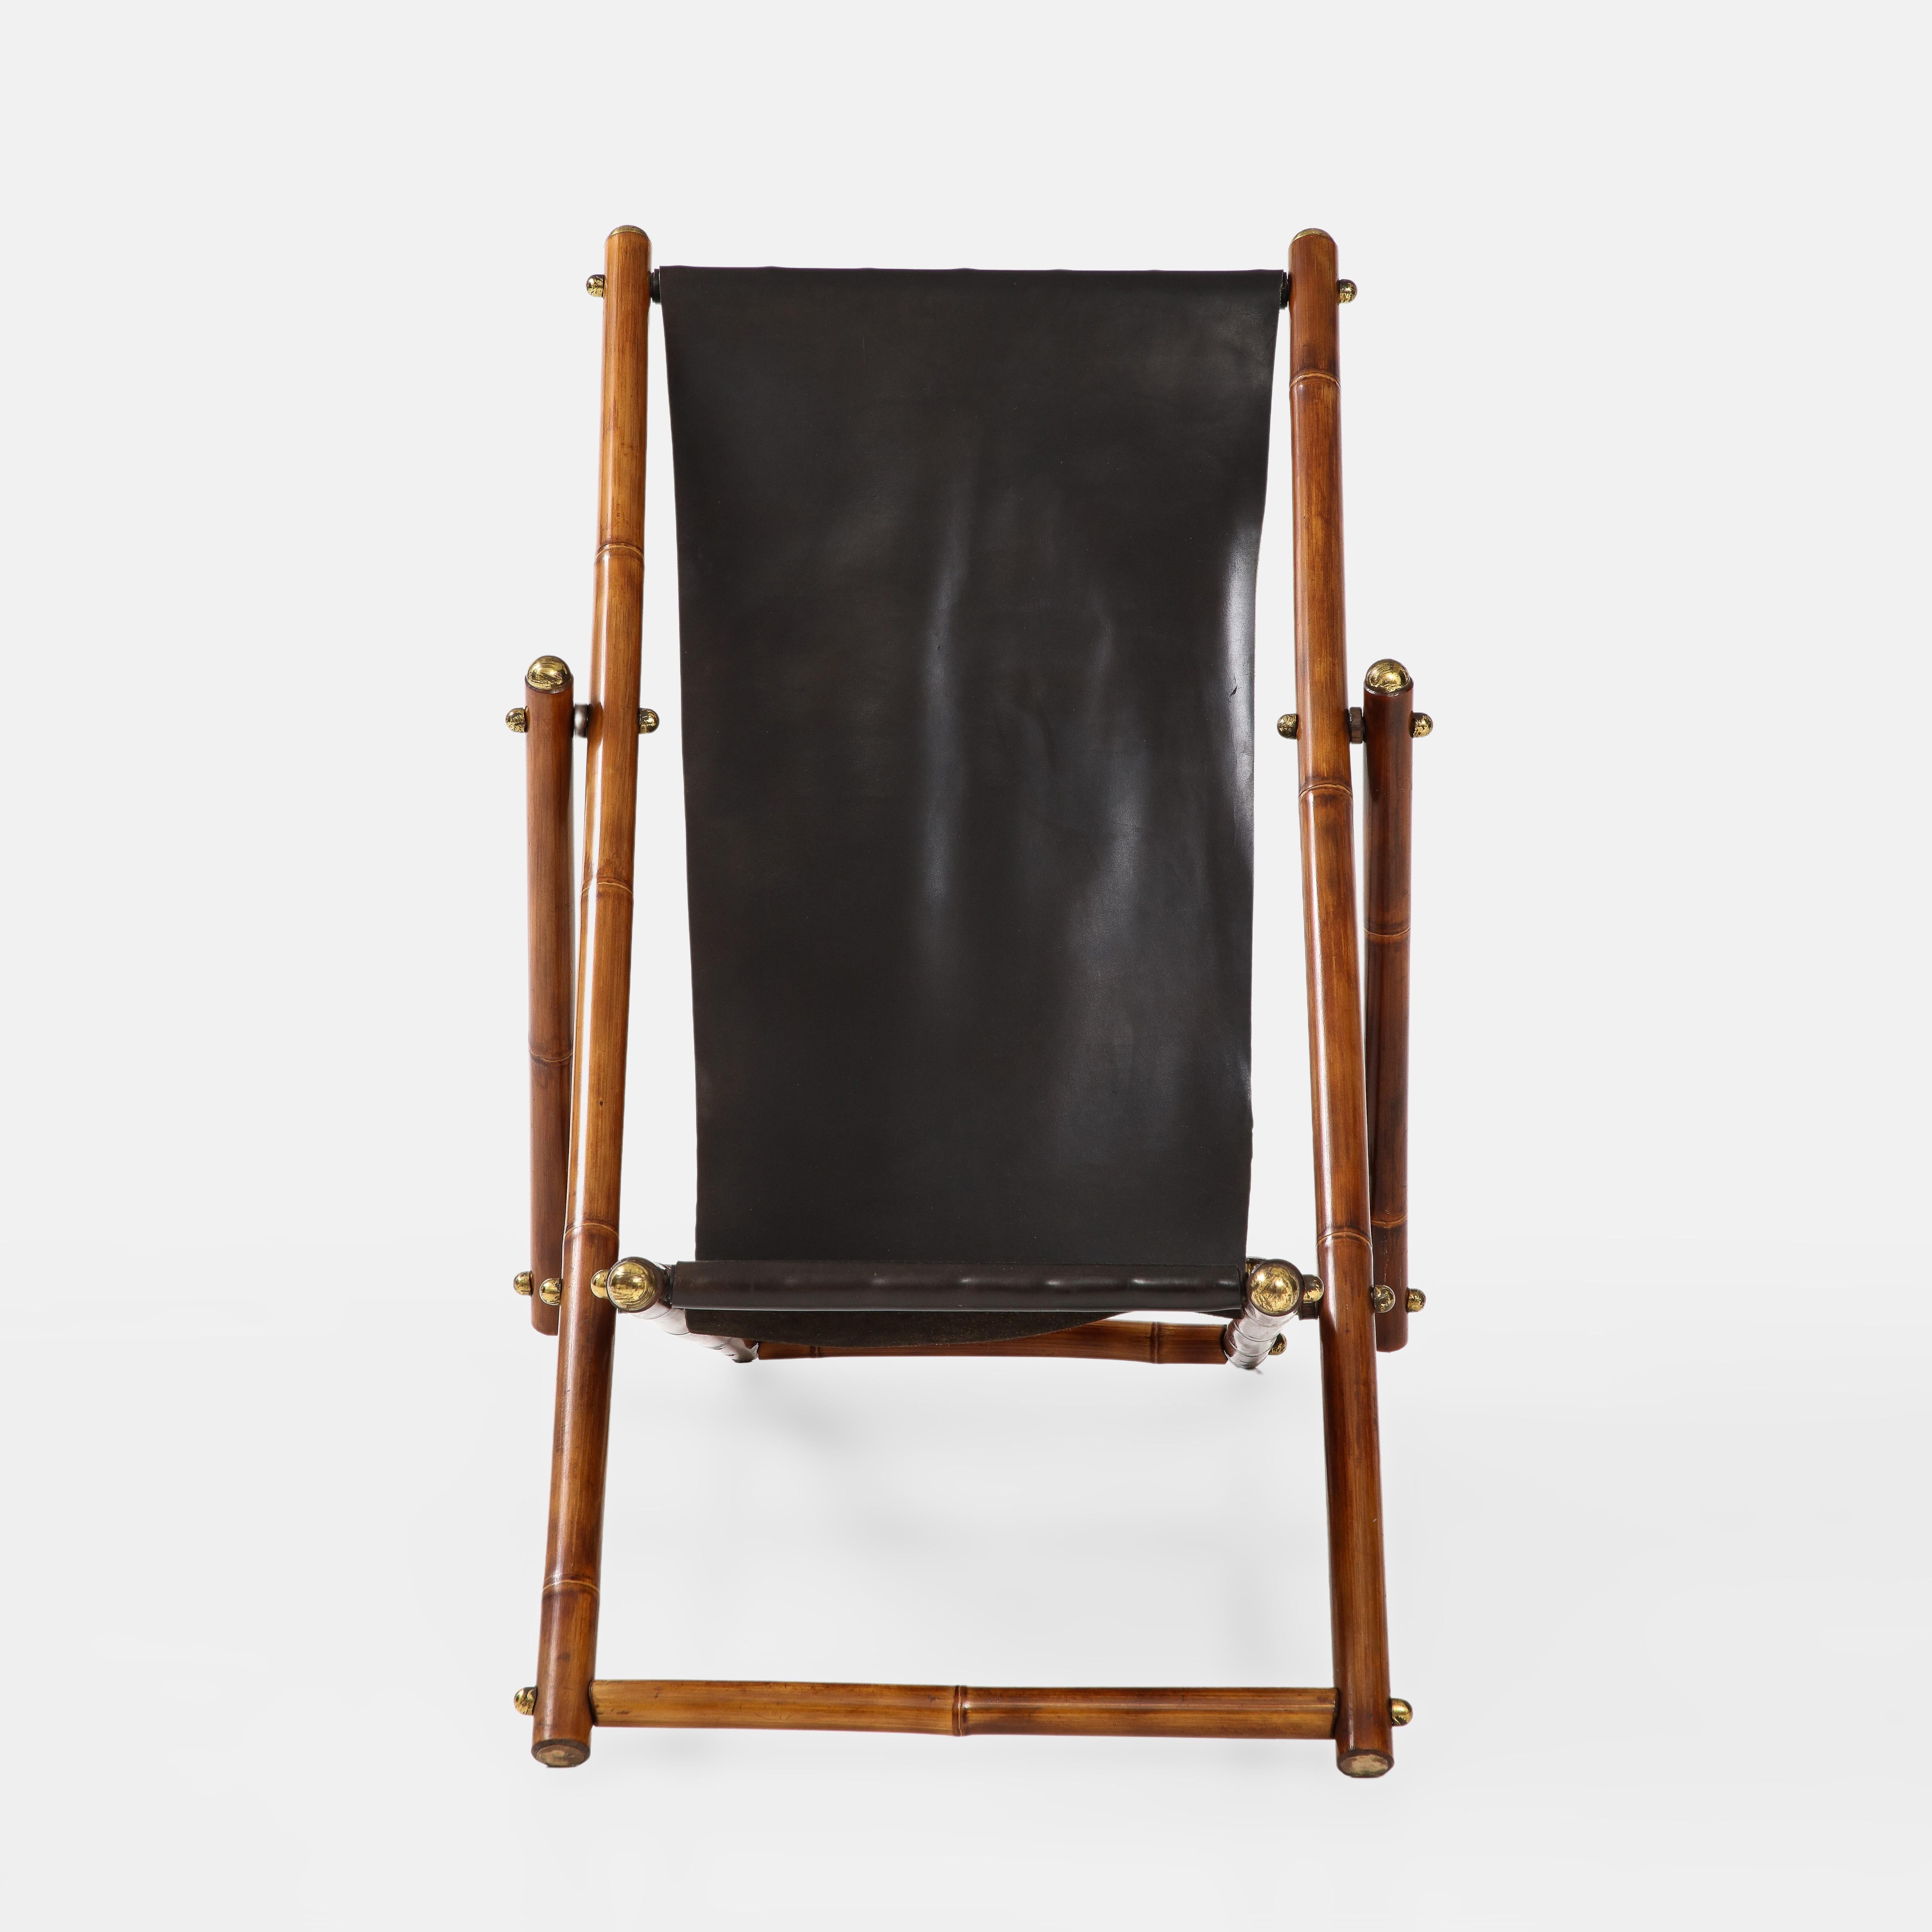 Italienischer, verstellbarer Campaigner-Klappstuhl aus lackiertem Bambusholz, mit schwarzem Original-Lederbezug und Messingdetails, 1970er Jahre.  Dieser unglaublich schicke und moderne Campaigner-Stuhl verfügt über wunderschöne Details, wie den